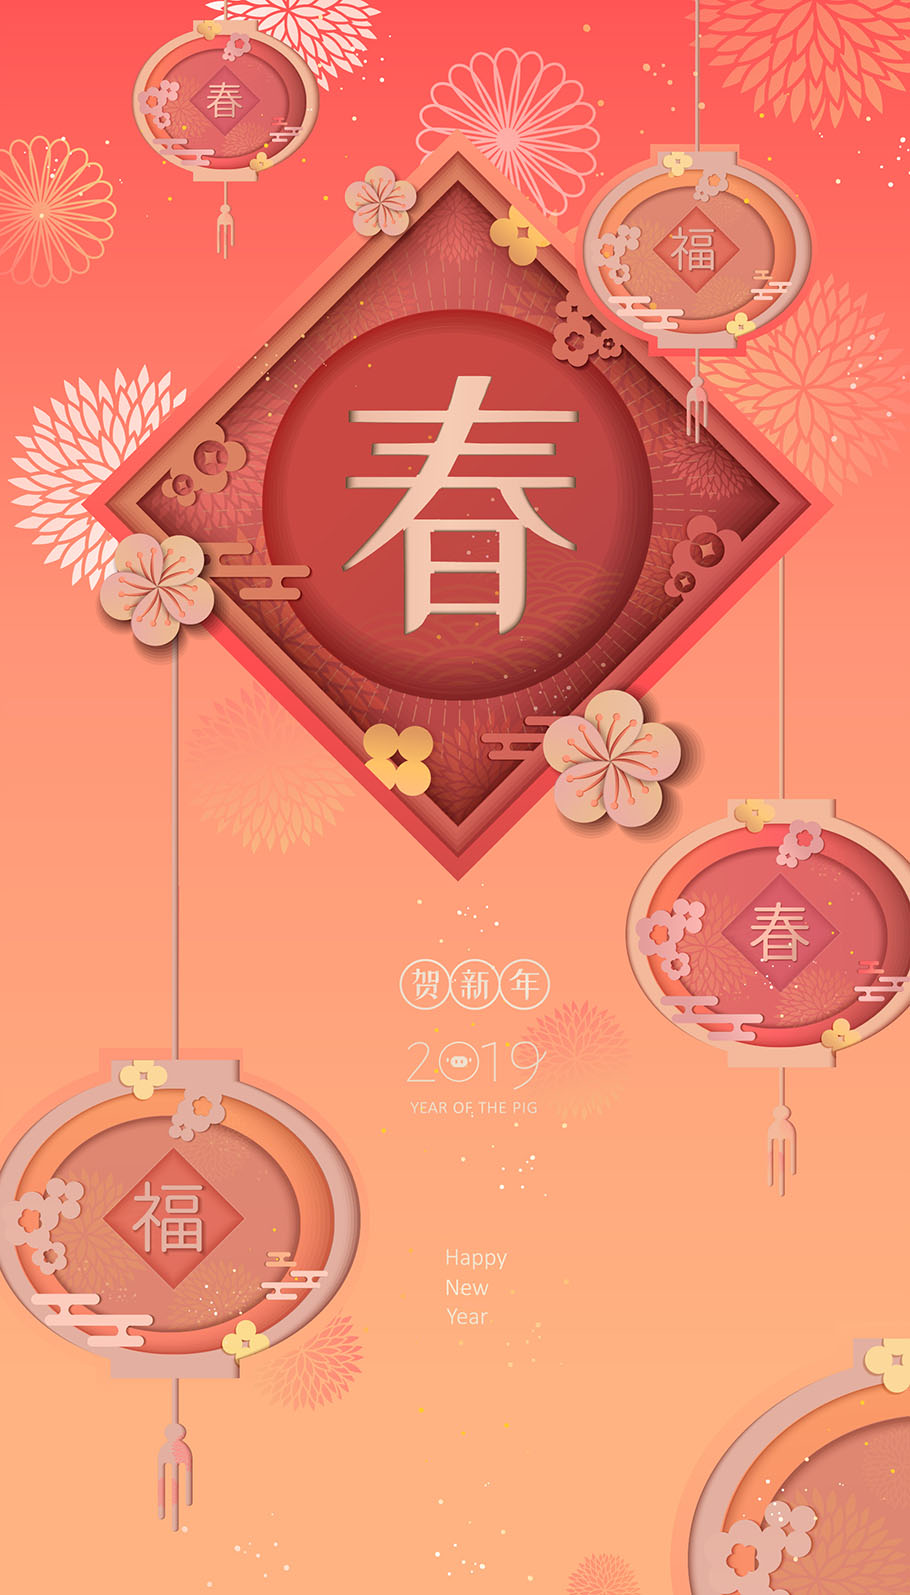 2019新春猪年可爱卡通风格ai矢量海报图片